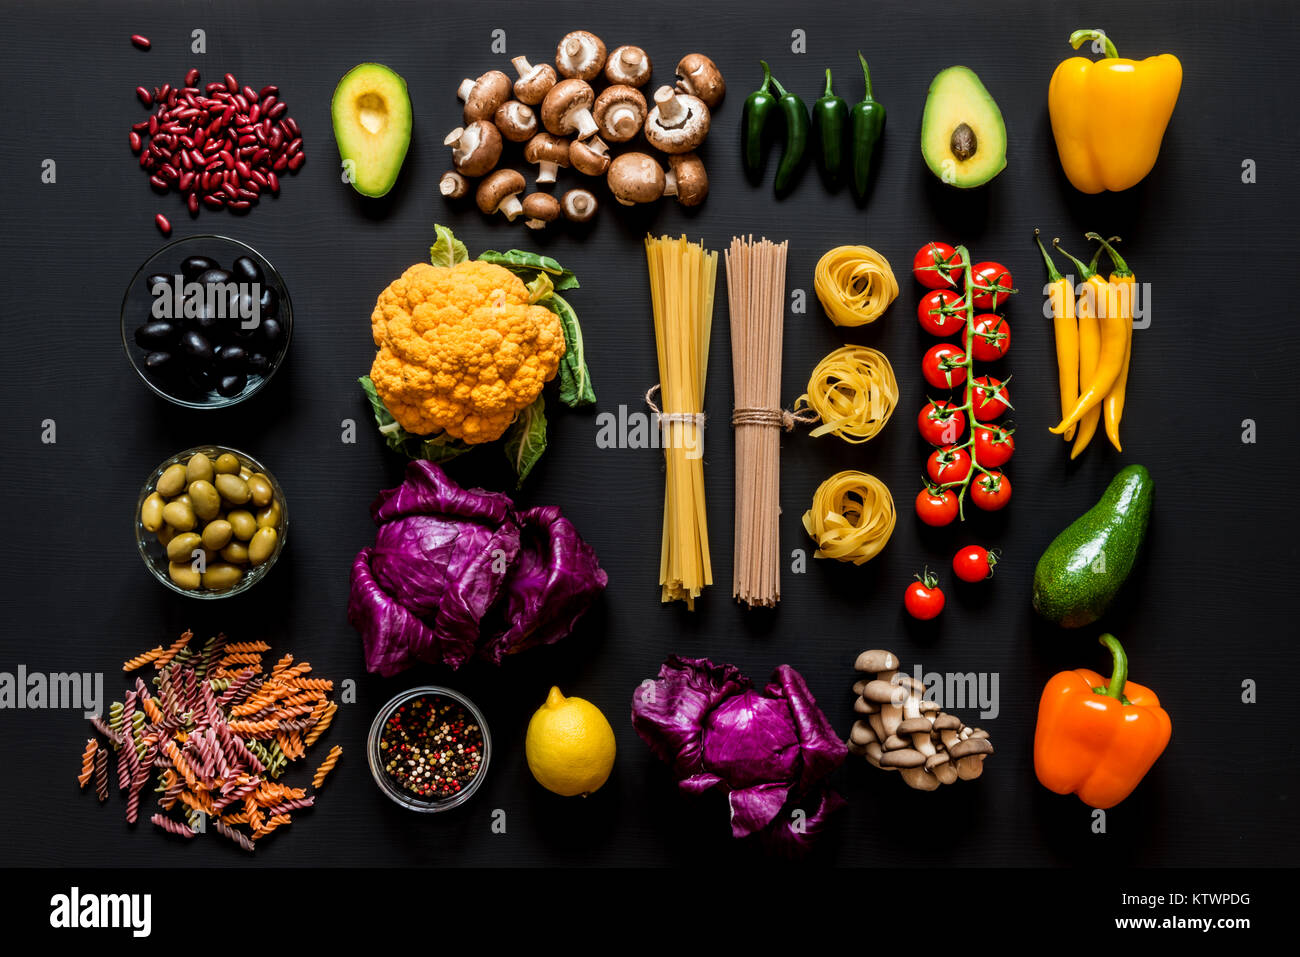 Différents ingrédients crus frais colorés pour la cuisine végétarienne saine sur un fond noir. Mise à plat, vue du dessus. Banque D'Images